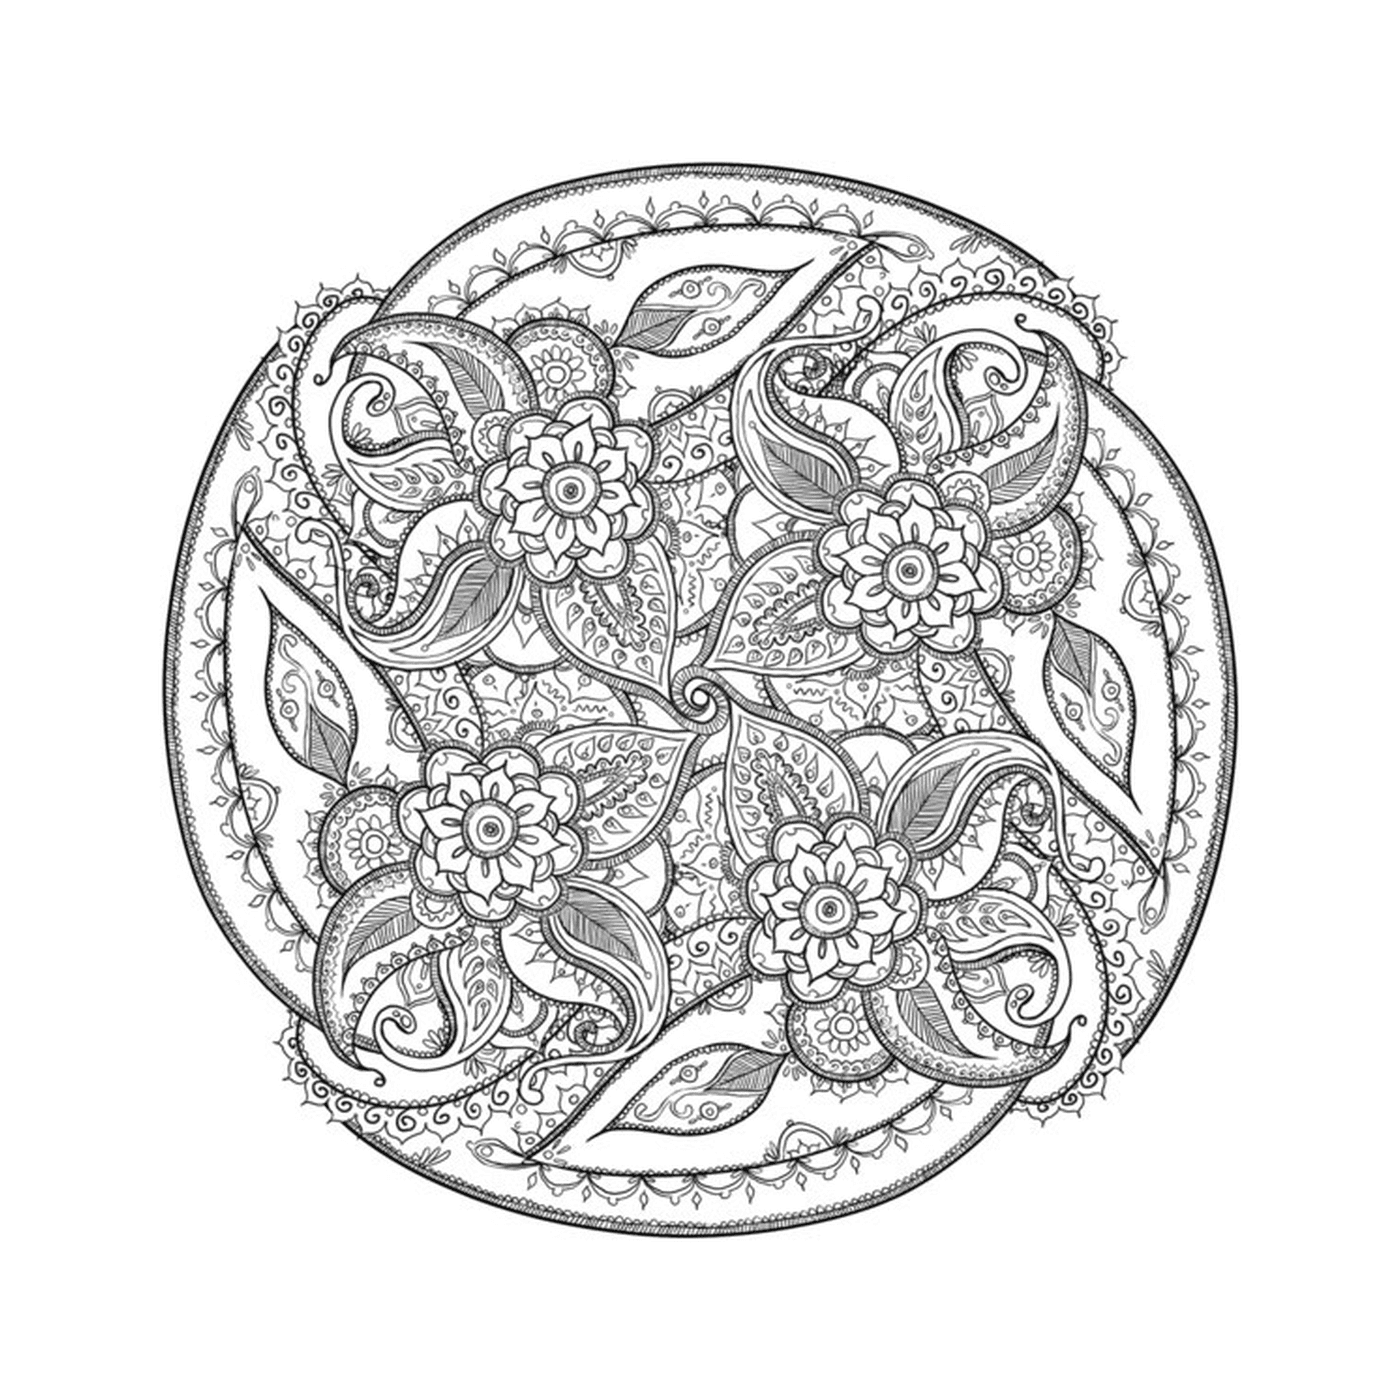  ein komplexes kreisförmiges Muster mit Blumen 